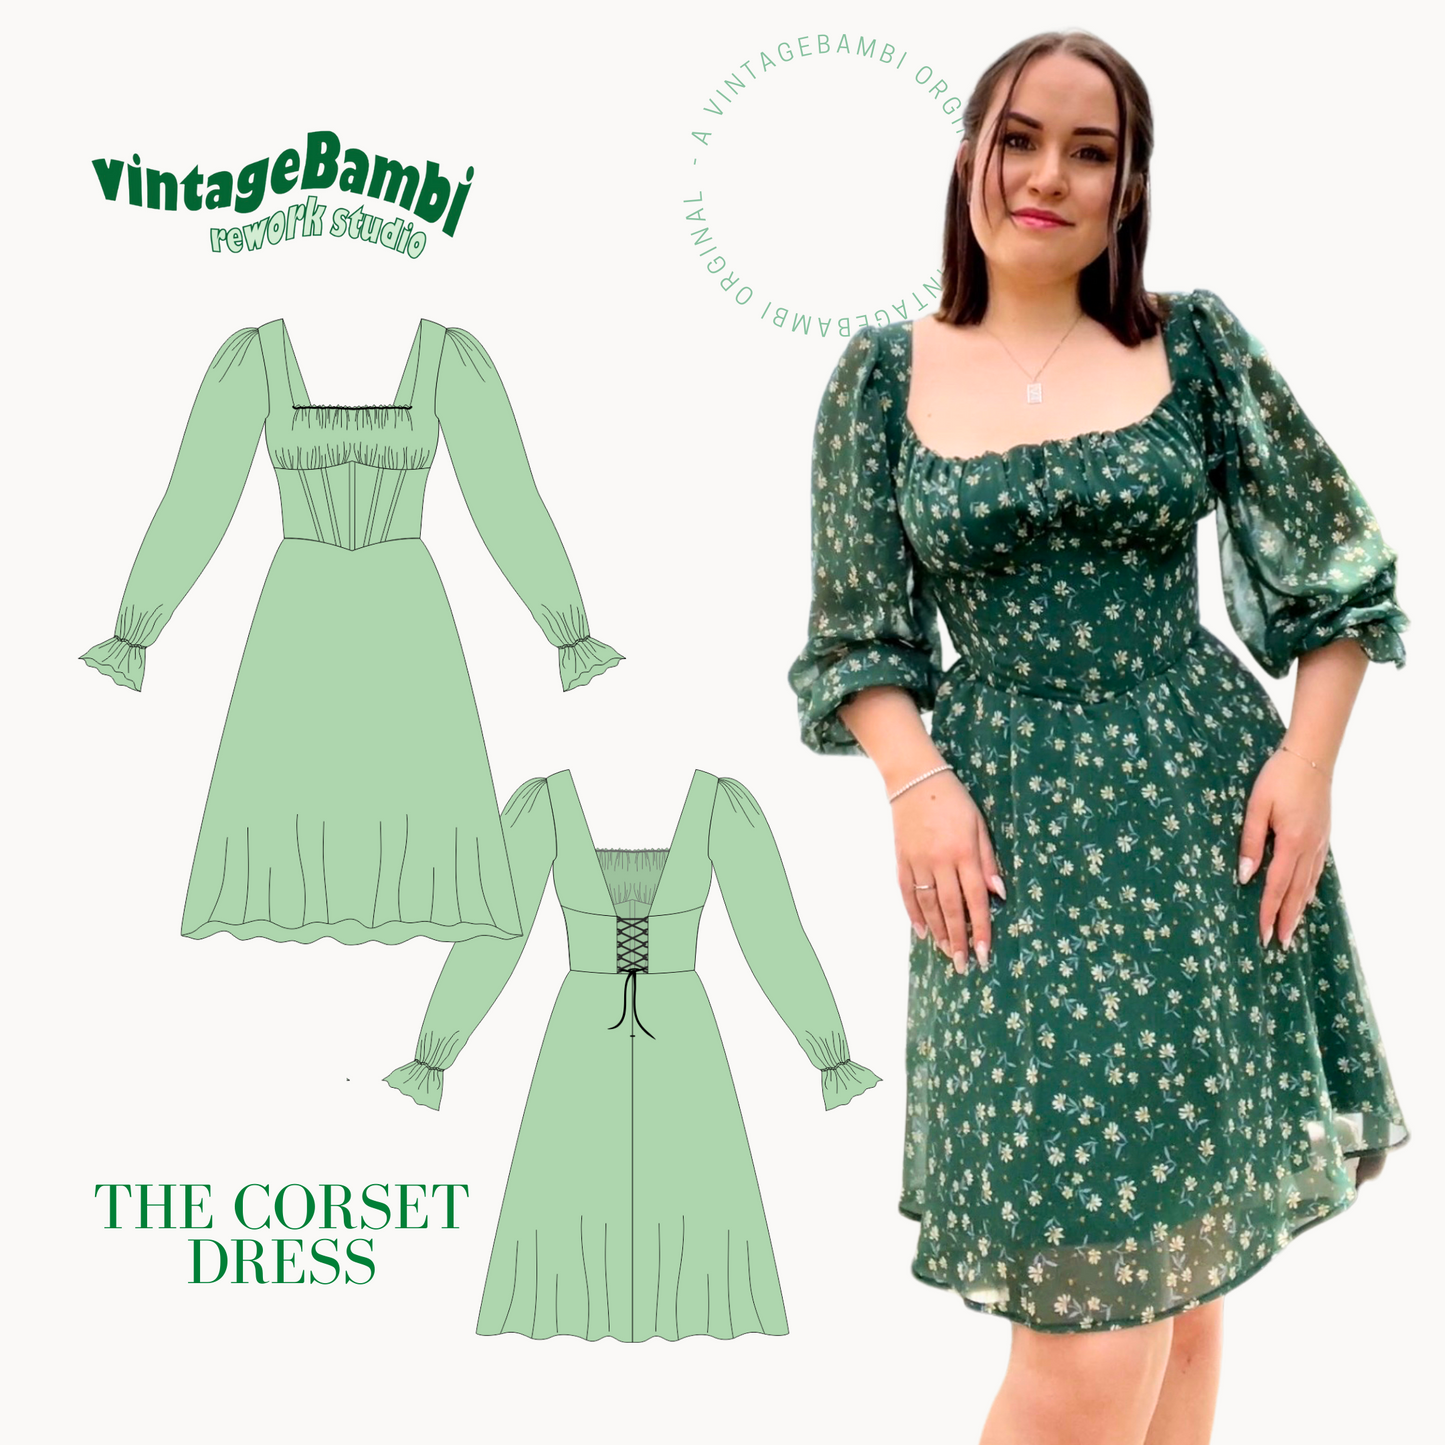 VintageBambi corset dress pattern ENGLISH